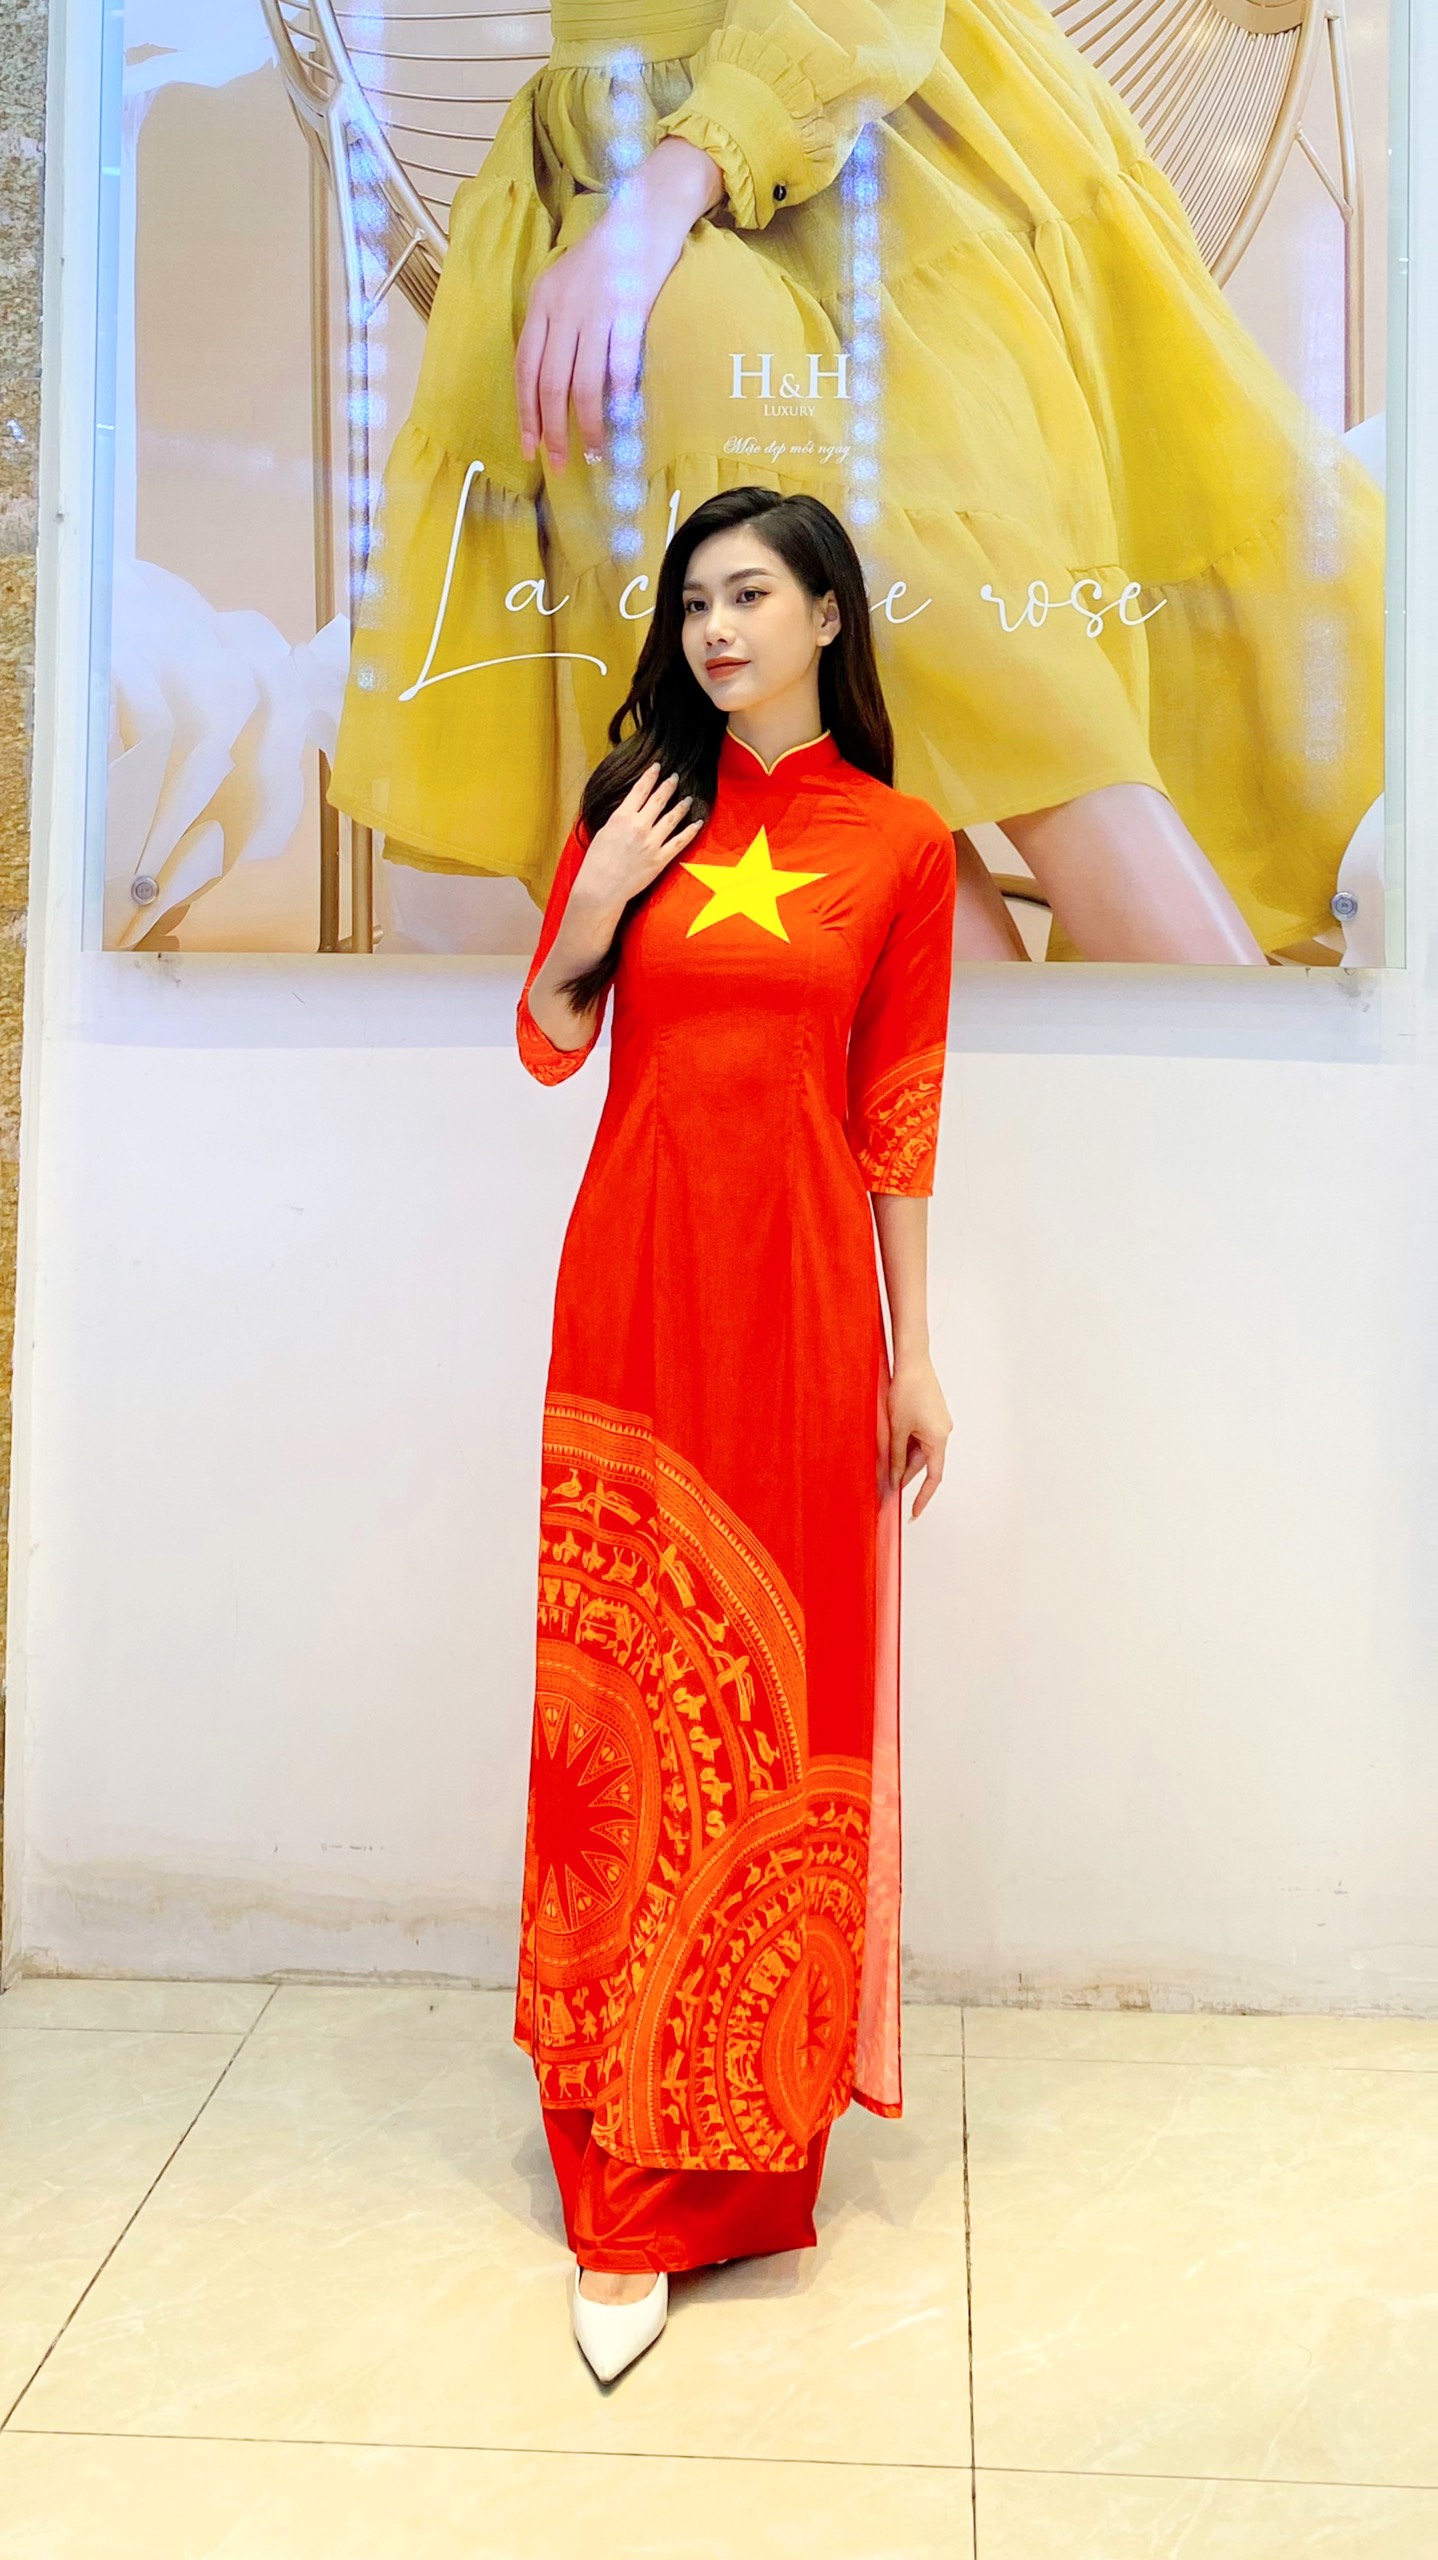 Áo dài lụa cổ viền vàng là một biểu tượng đẹp của truyền thống Việt Nam, tạo nên vẻ đẹp thanh lịch, trang nhã và quyến rũ cho người mặc. Hãy xem ảnh để khám phá vẻ đẹp tinh tế và sự tinh xảo trong từng chi tiết của áo dài lụa cổ viền vàng.